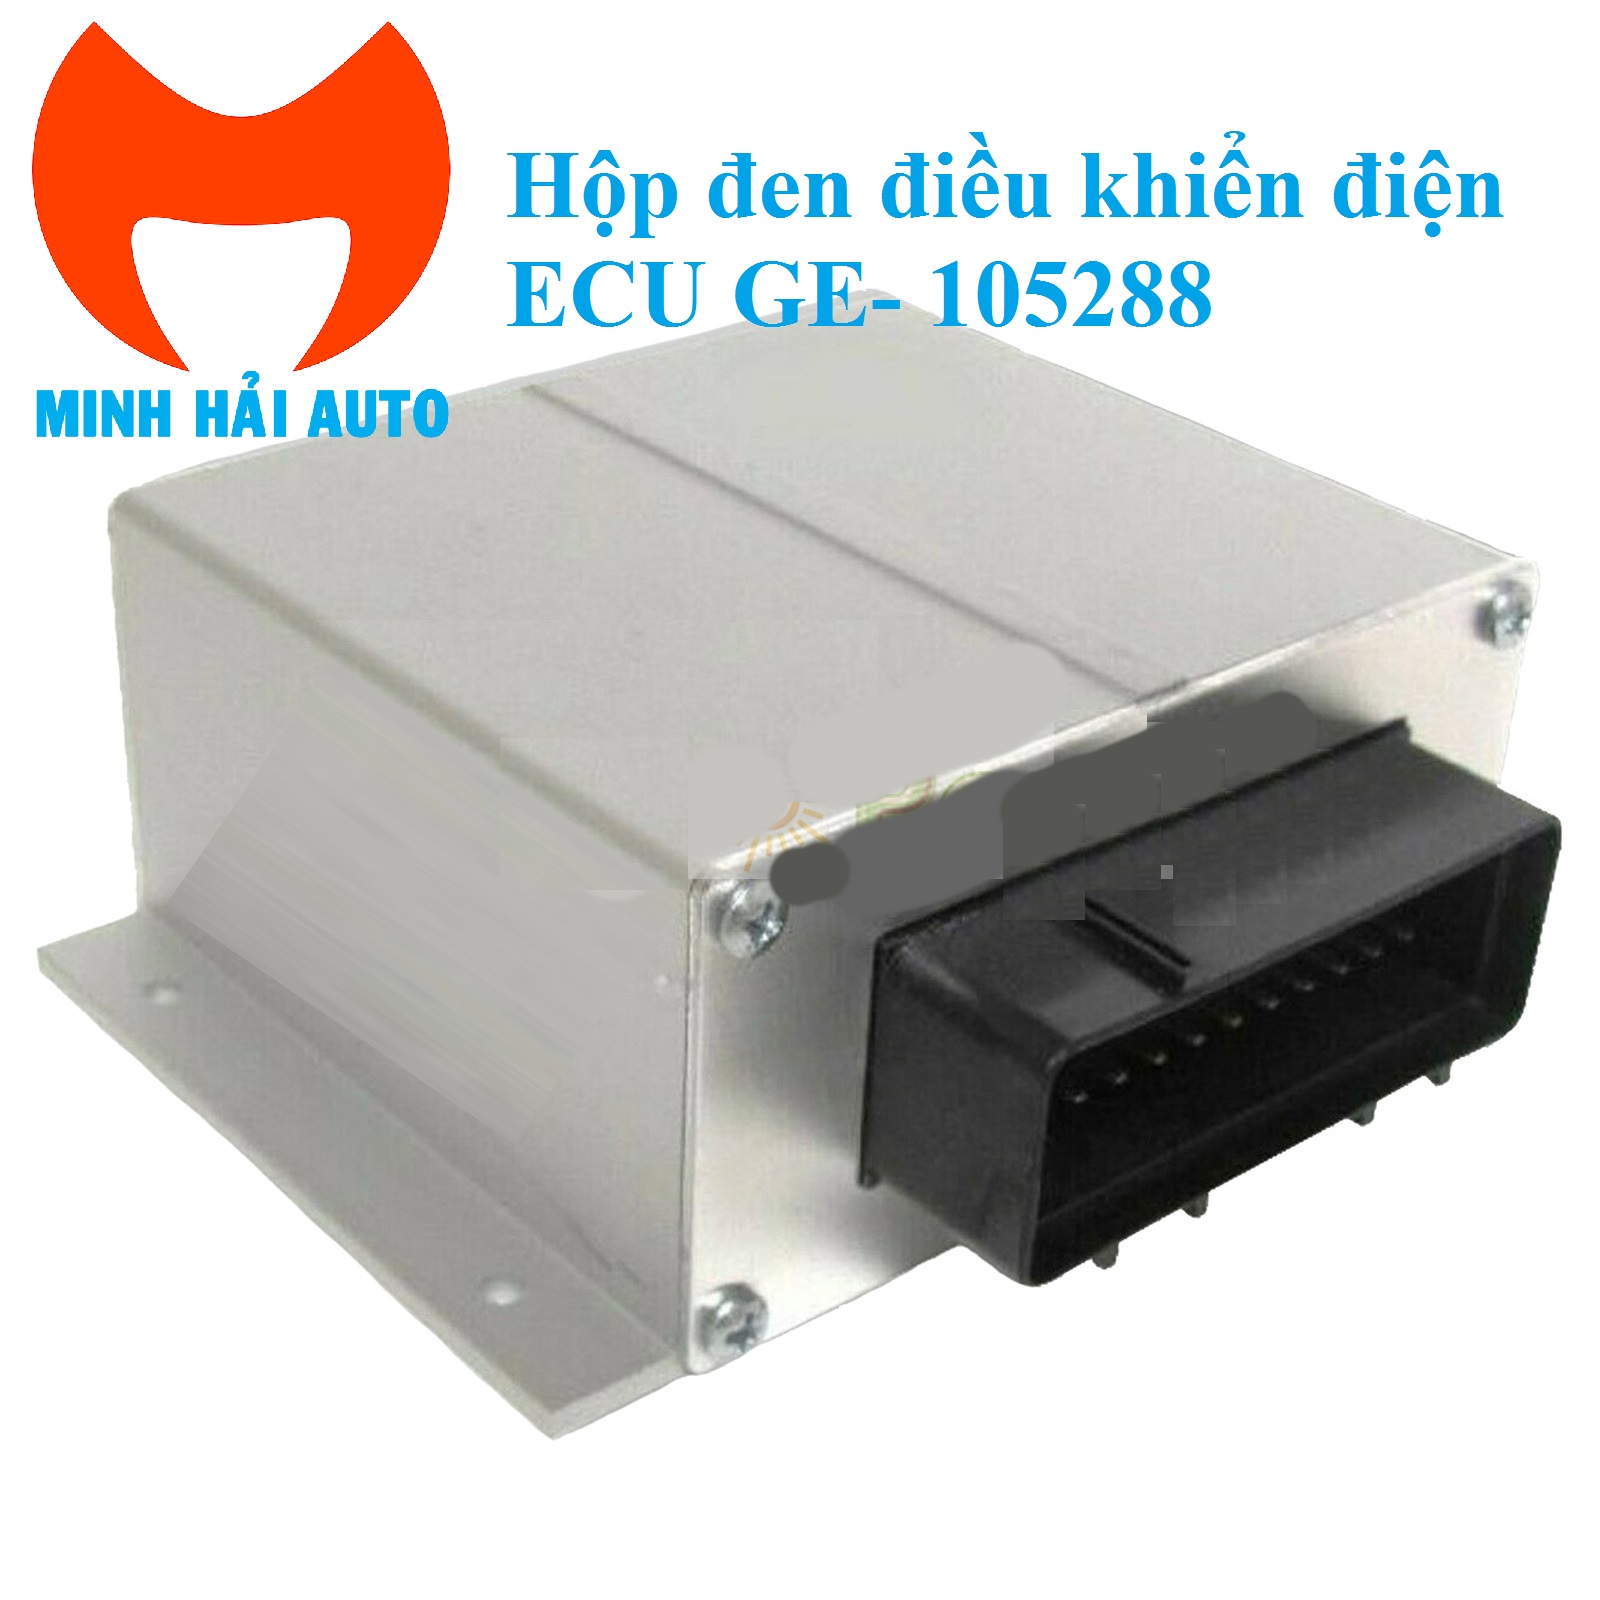 Hộp đen bộ điều khiển điện ECU xe Genie GE- 105288